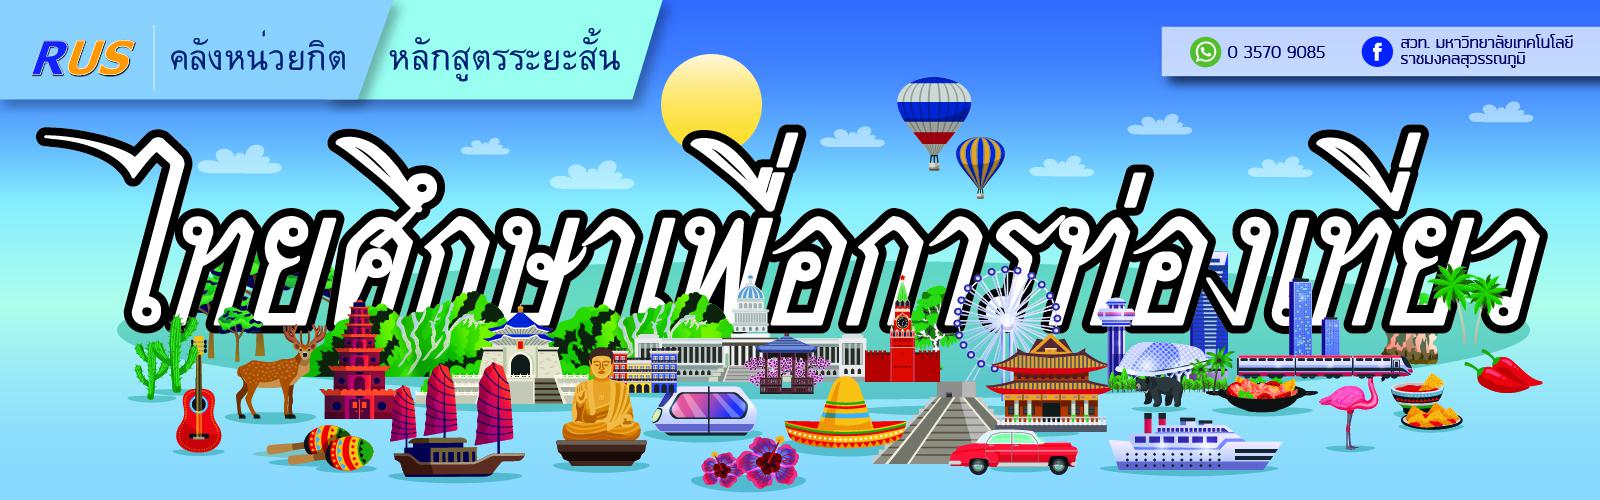 หลักสูตรระยะสั้น : รายวิชาไทยศึกษาเพื่อการท่องเที่ยว